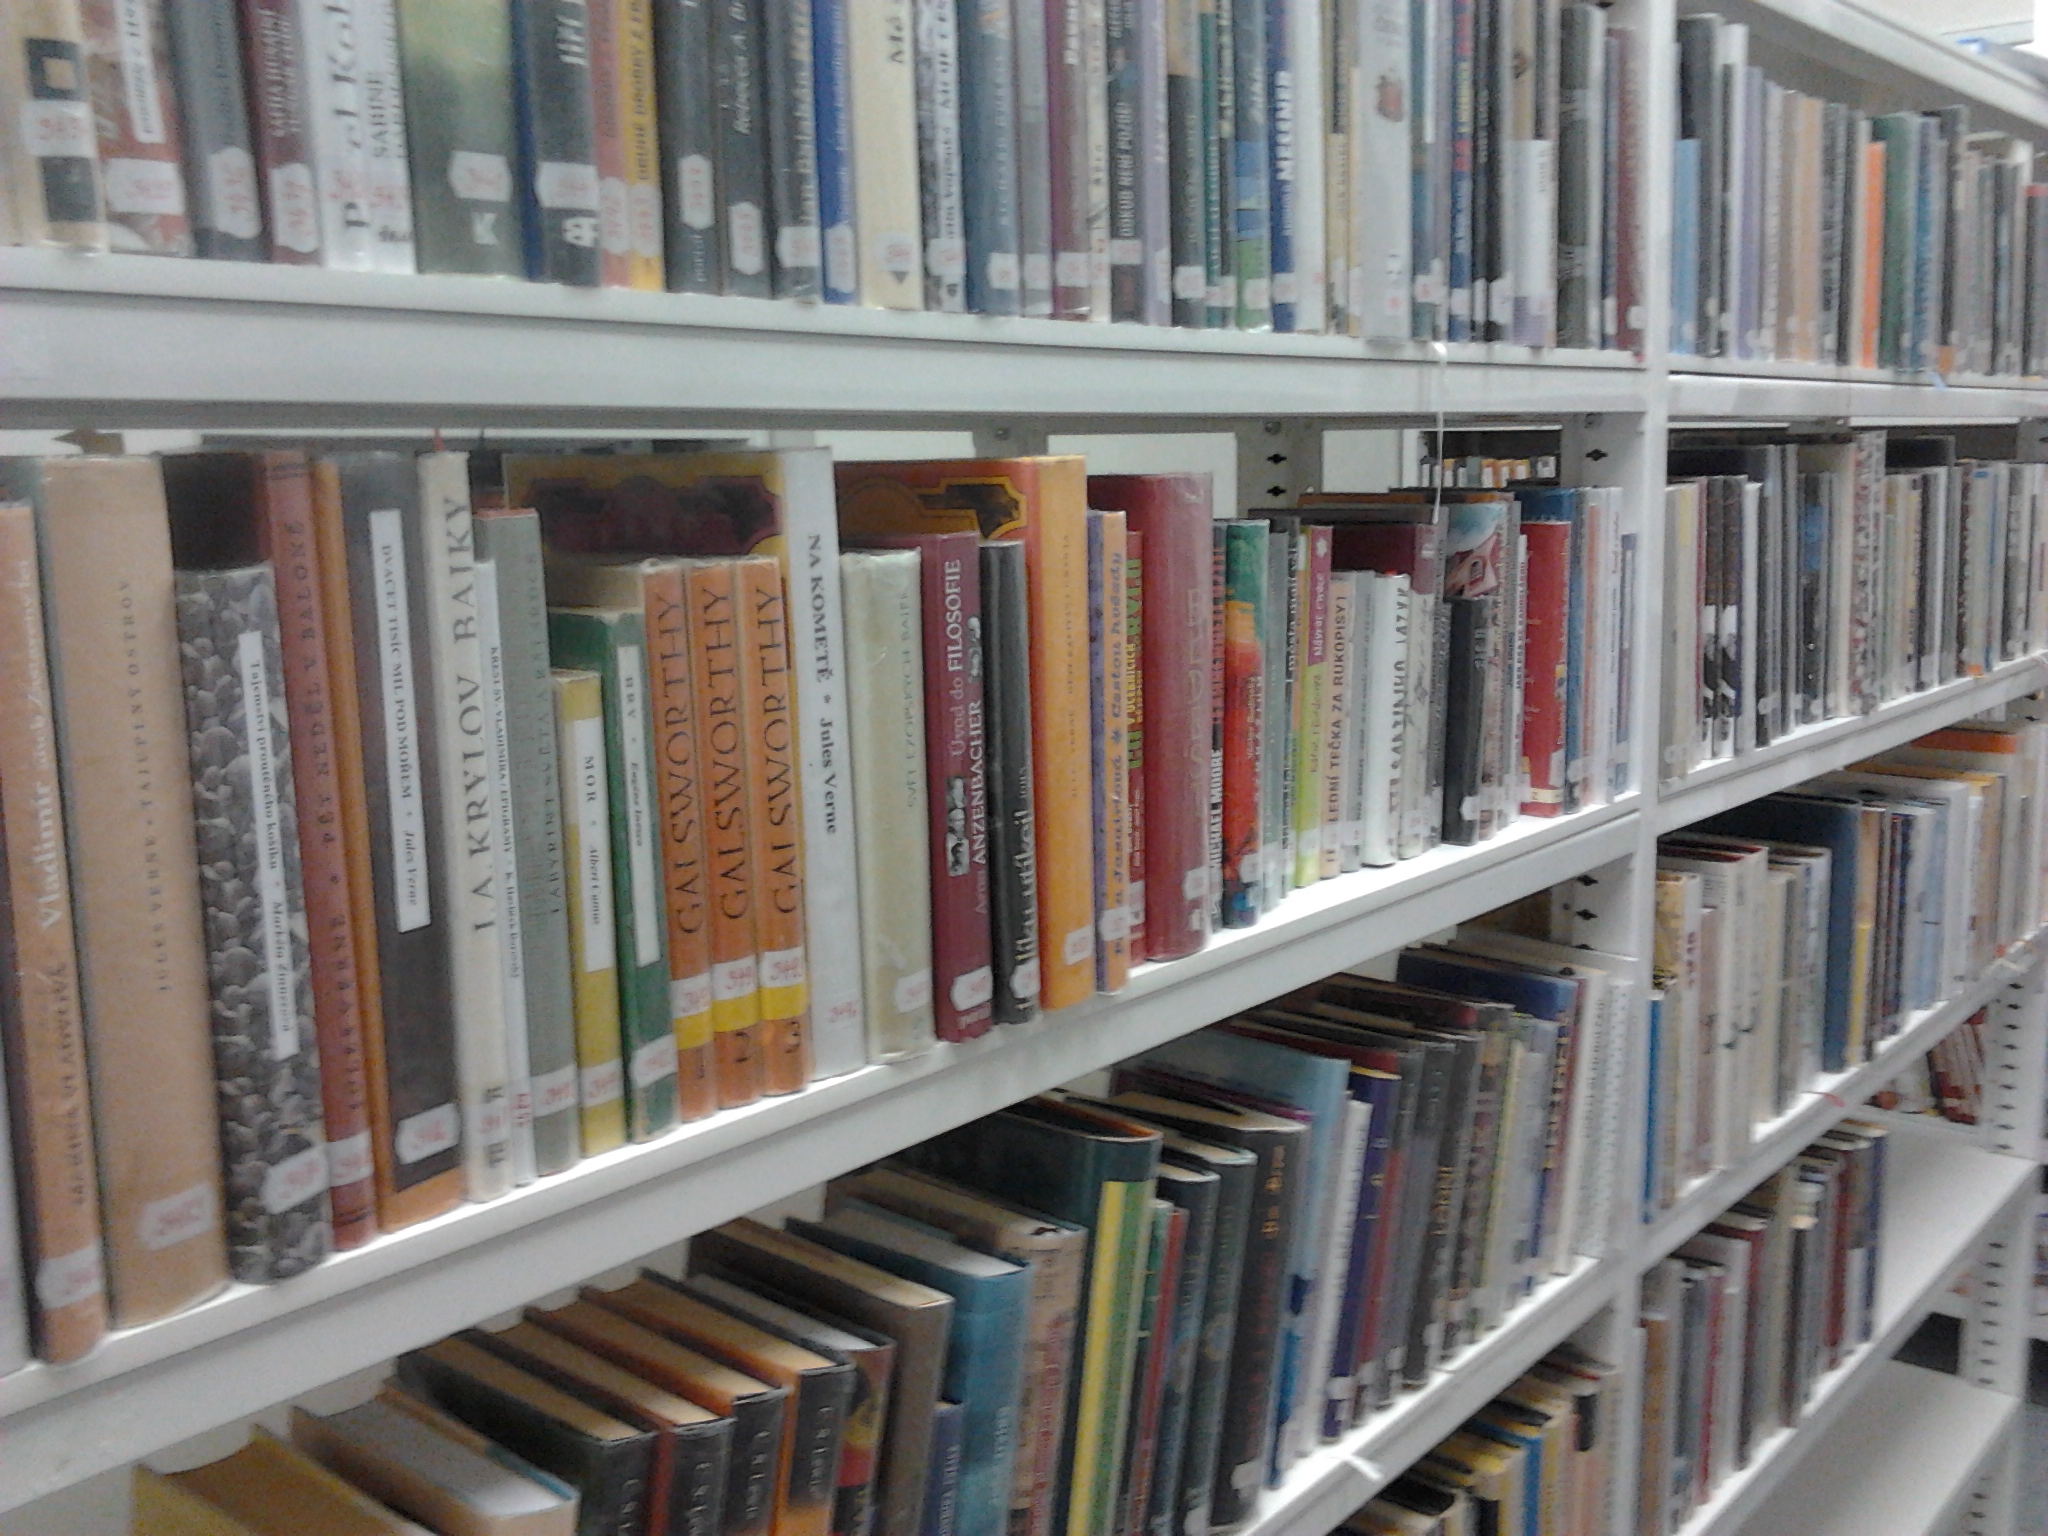 školní knihovna: uvnitř jsou knihy